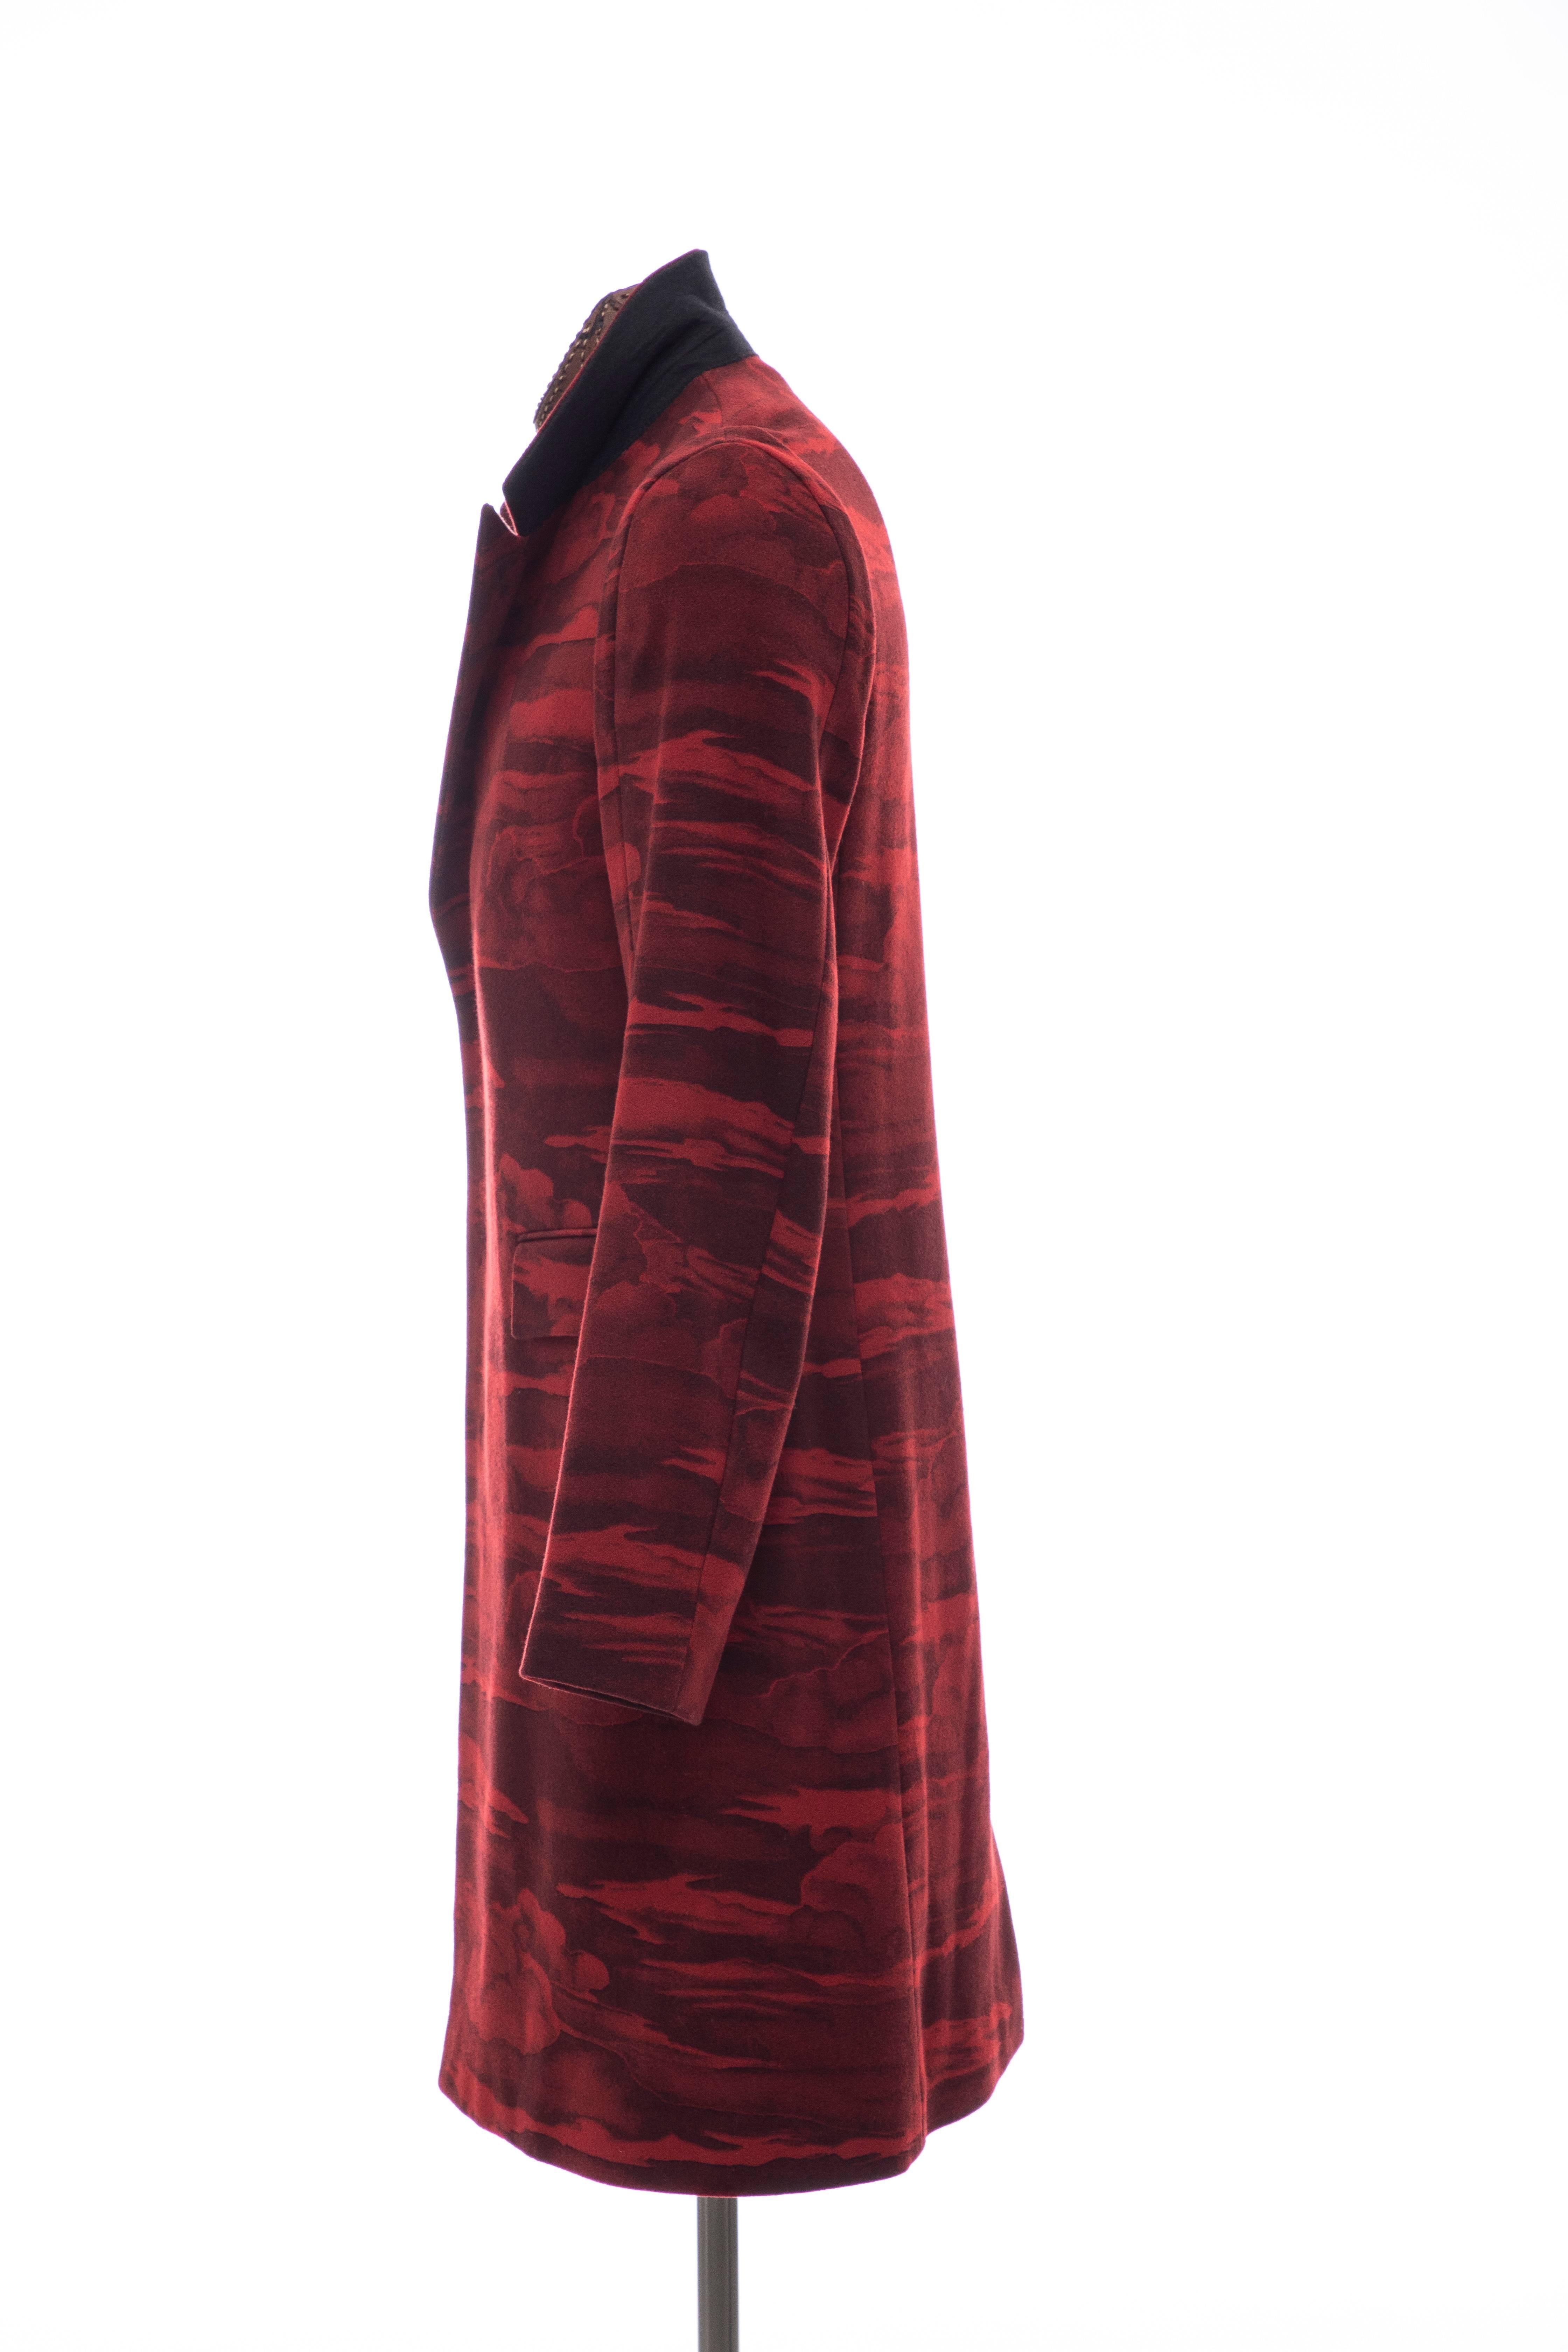 Kenzo Men's Runway Wool Red Cloud Print Coat, Fall 2013 5